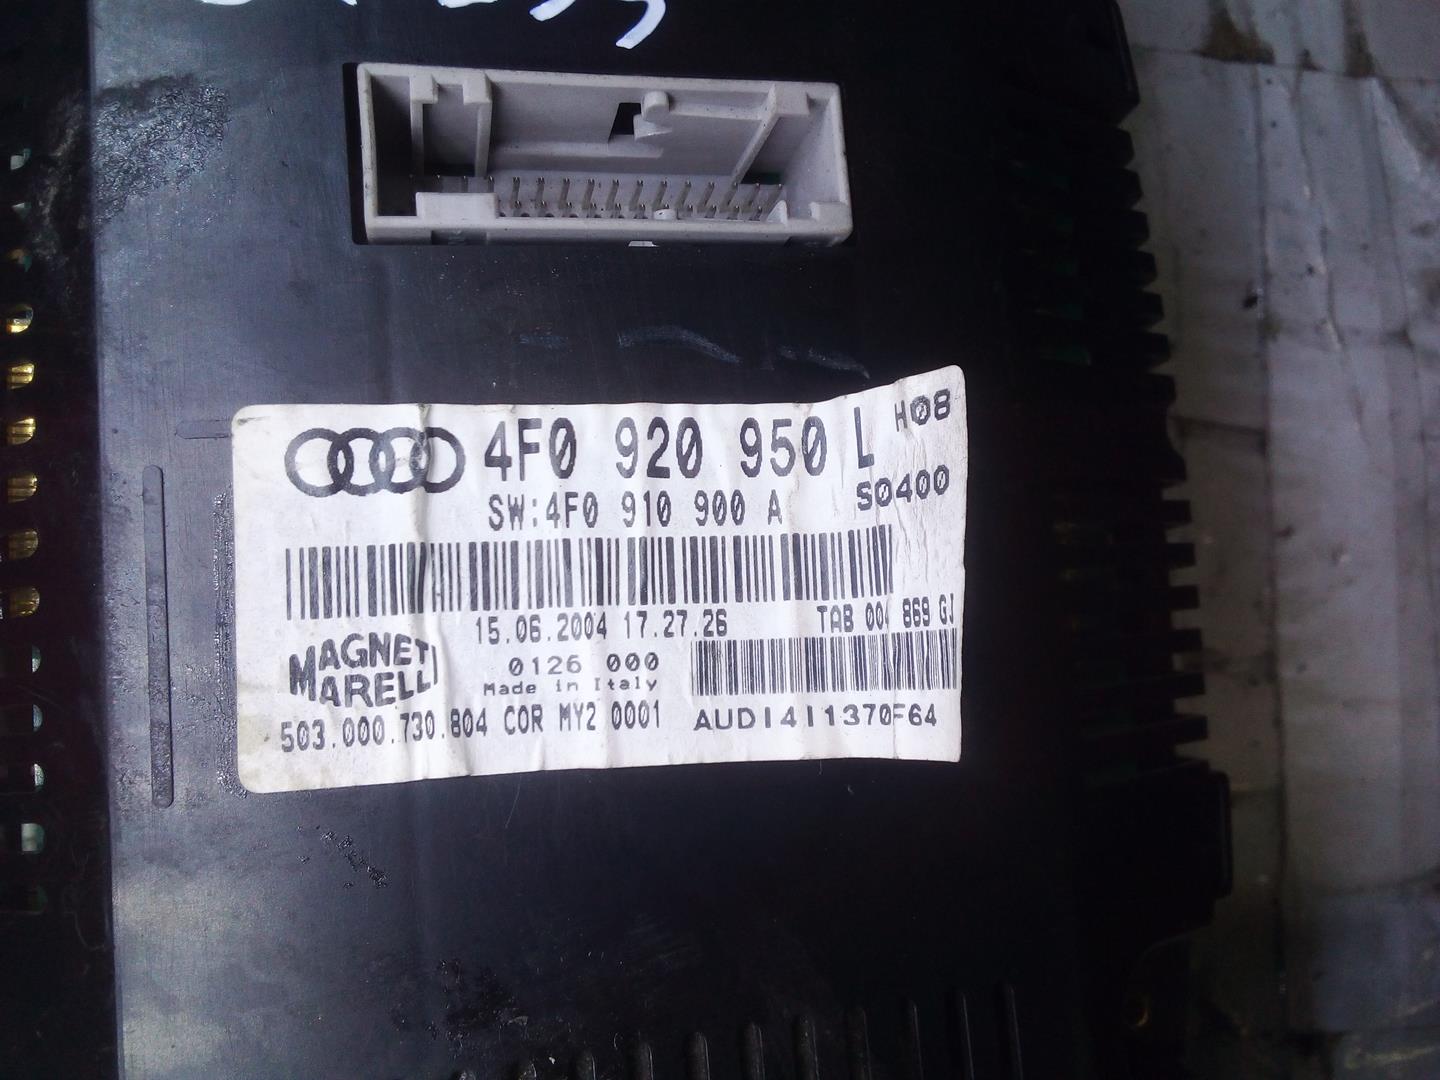 AUDI A6 C6/4F (2004-2011) Speedometer 4F0920950L, 4F0910900A, 503000730804 25248089